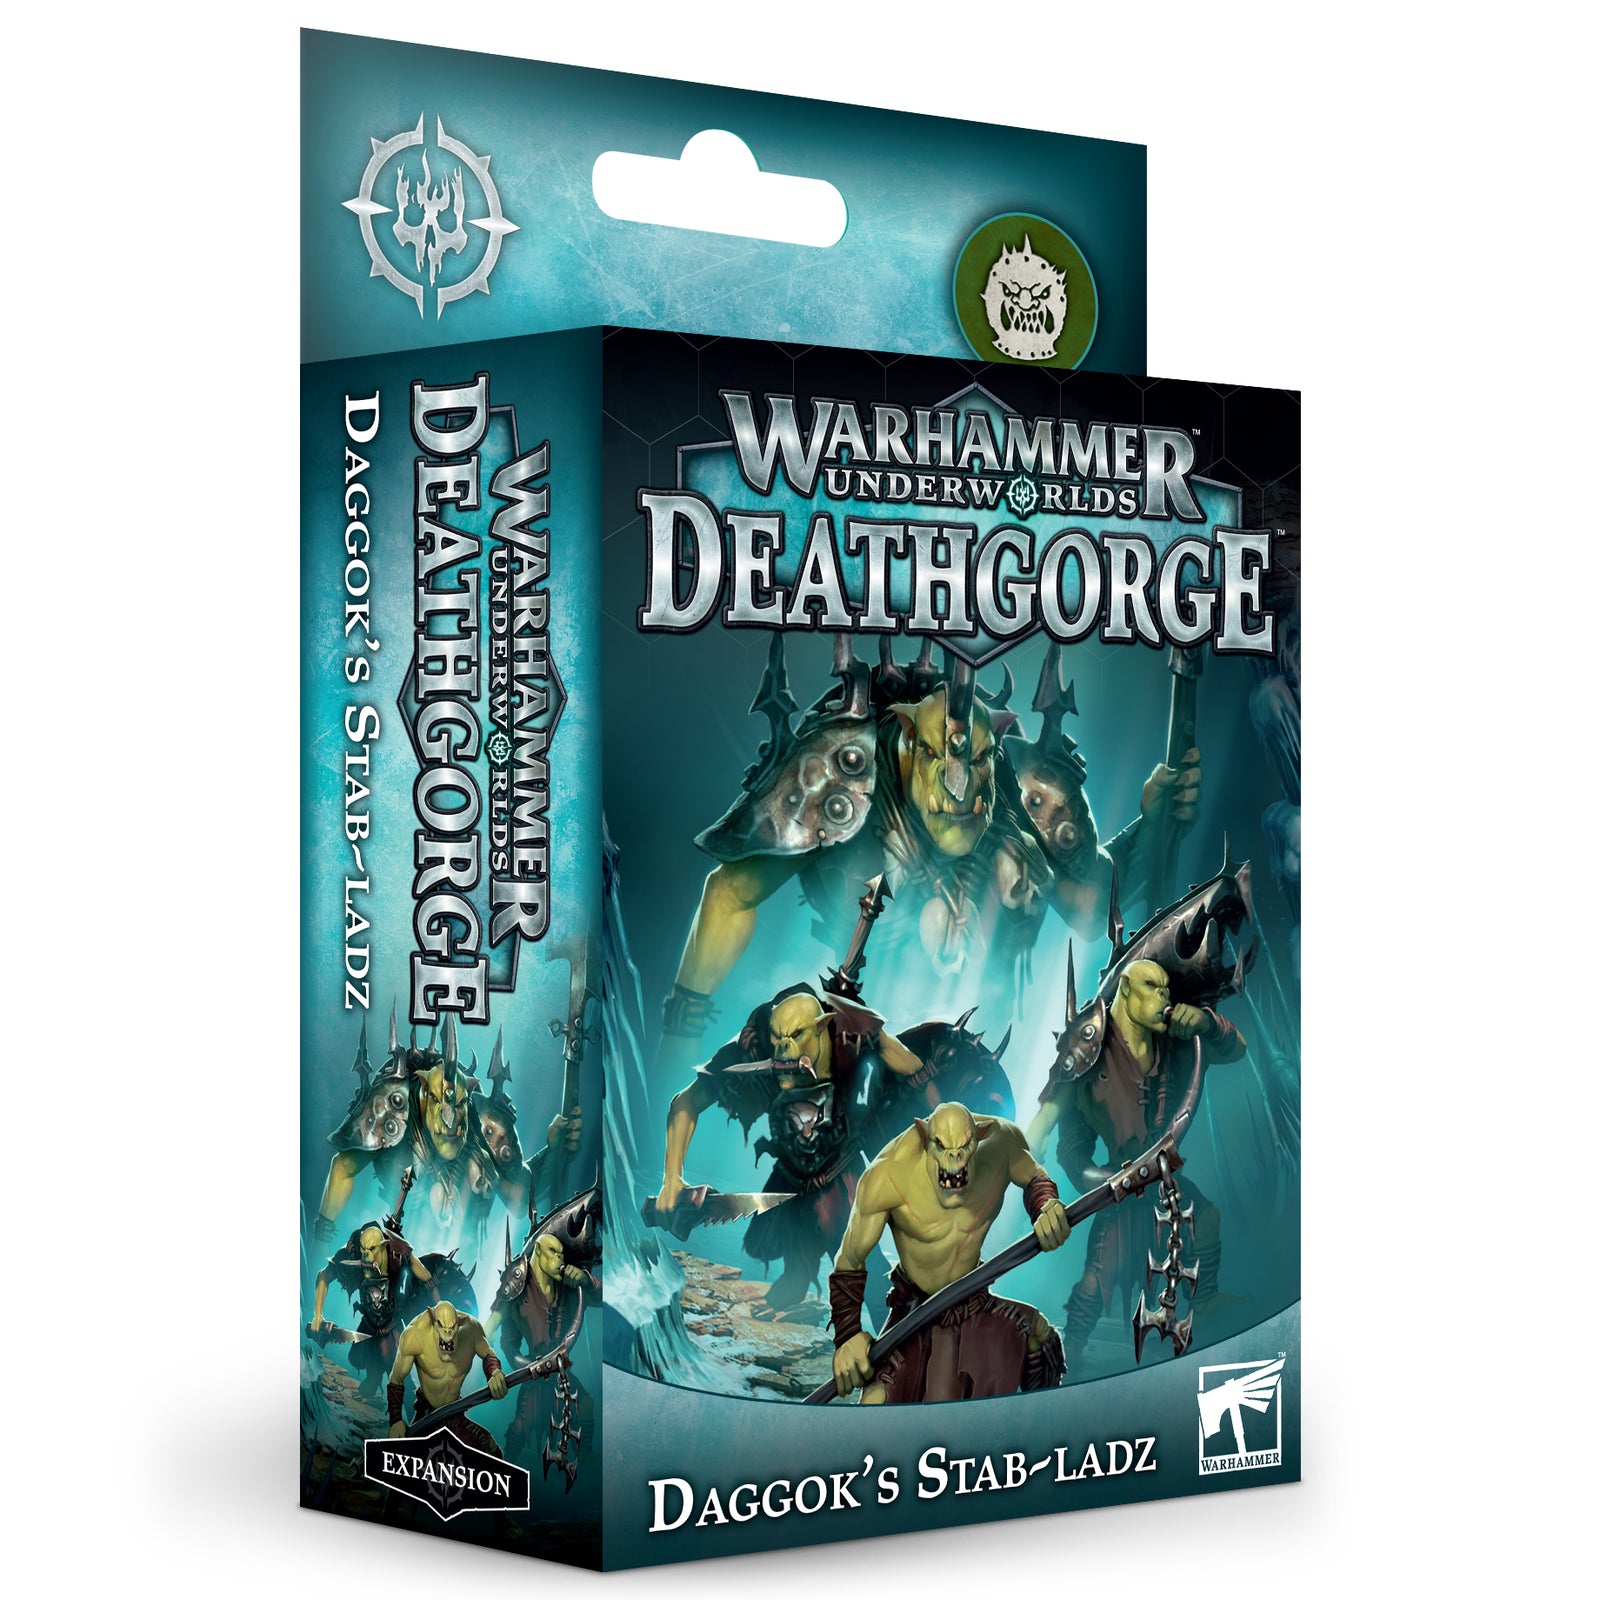 Warhammer Underworlds Deathgorge: Daggok's Stab-Ladz